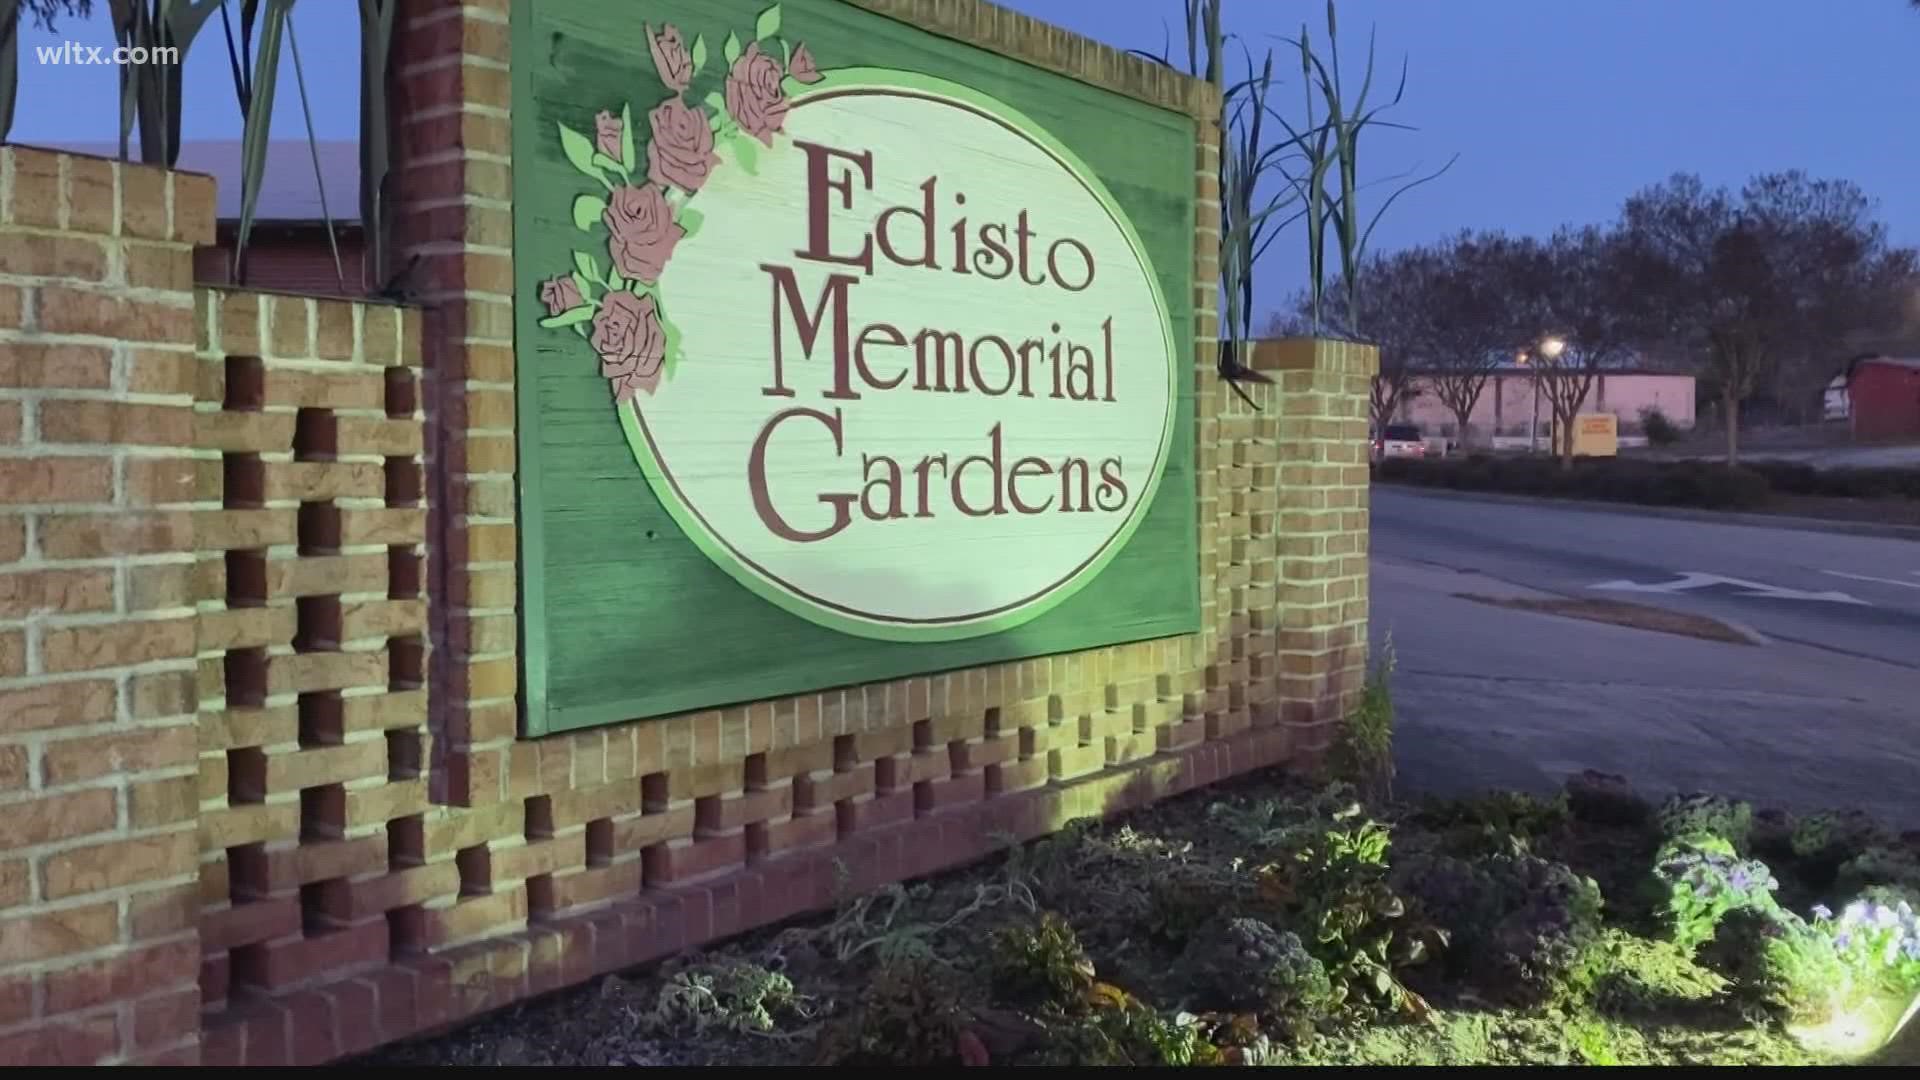 Upgrades are underway at Edisto Memorial Gardens.